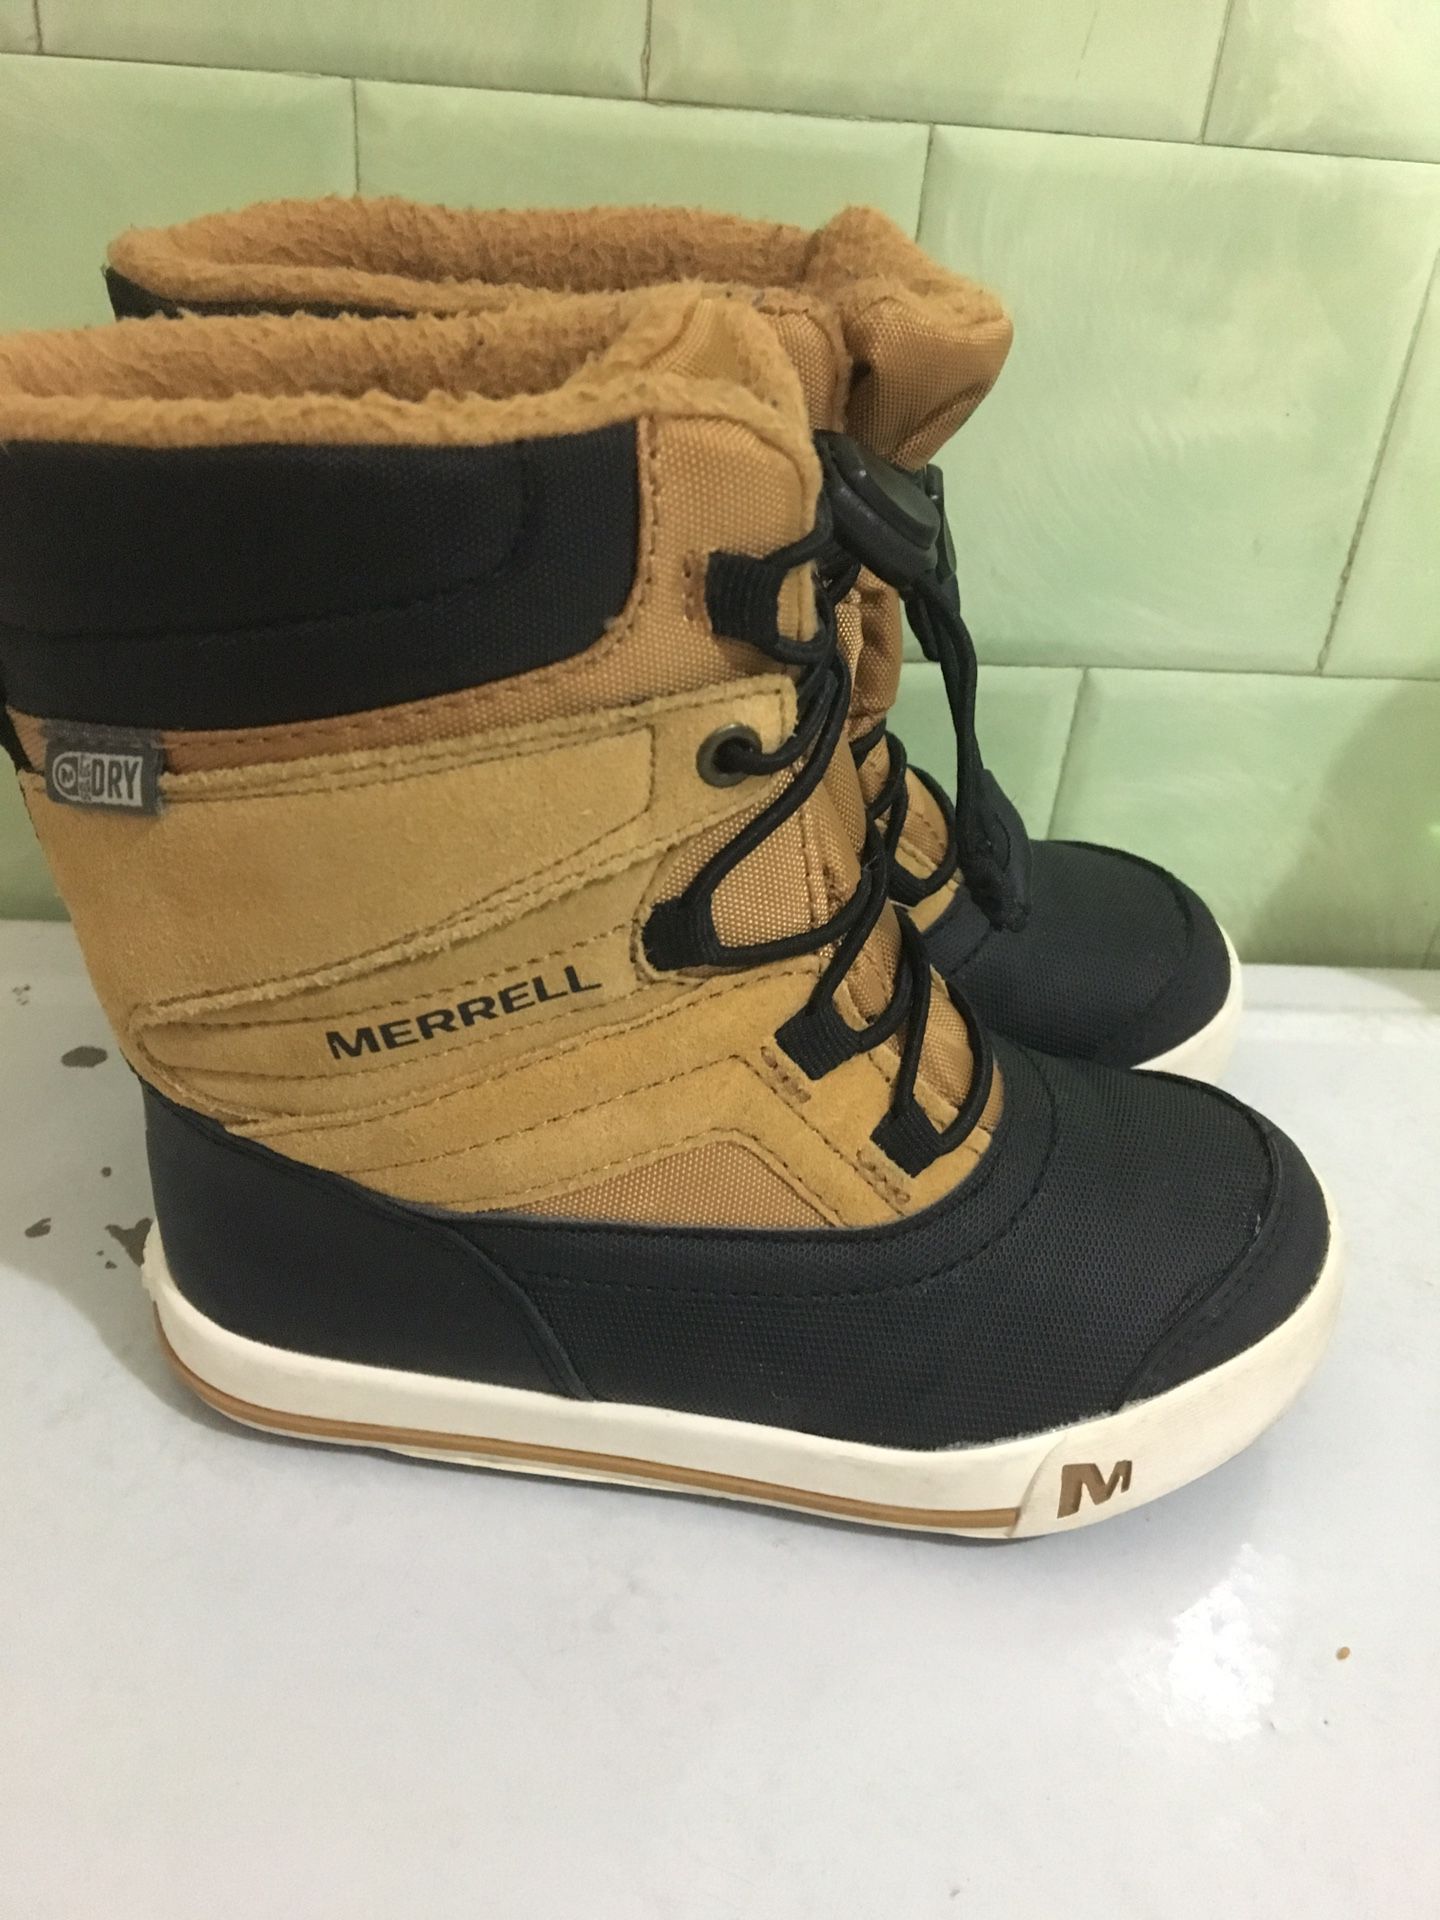 Merrell Boys Size 11 Snow Boots